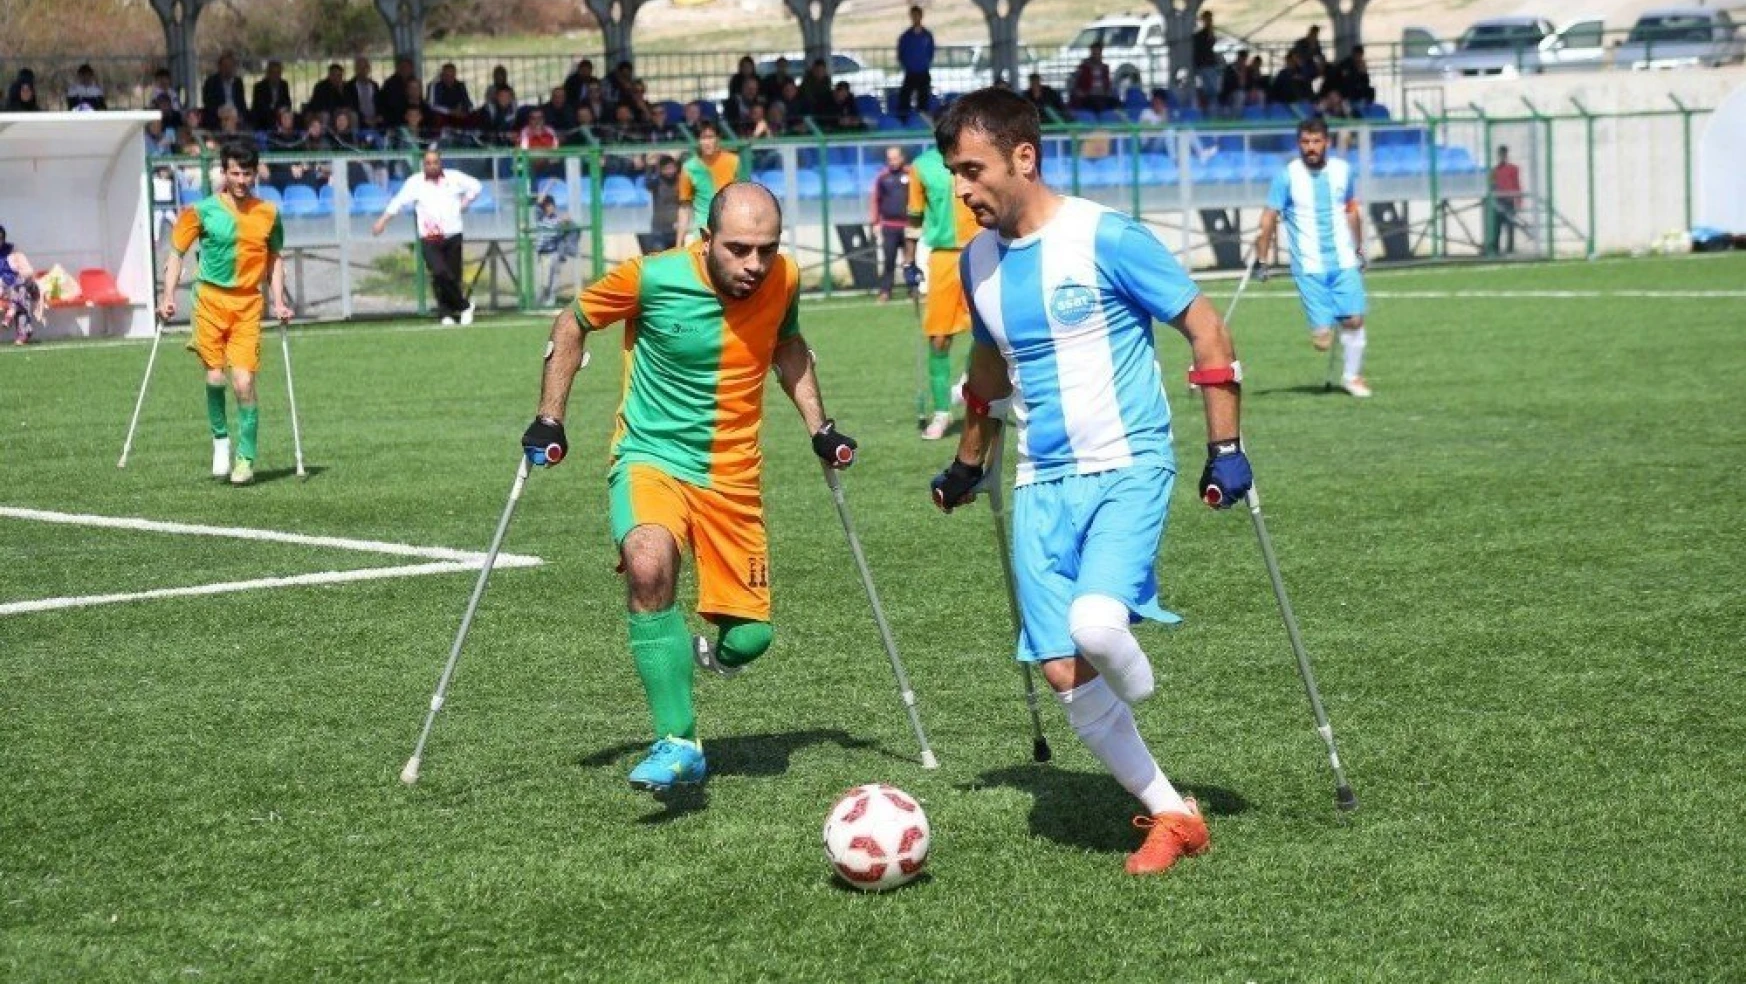 Büyükşehir Belediyesi Ampute Futbol Takımı şampiyonluk için son virajda
